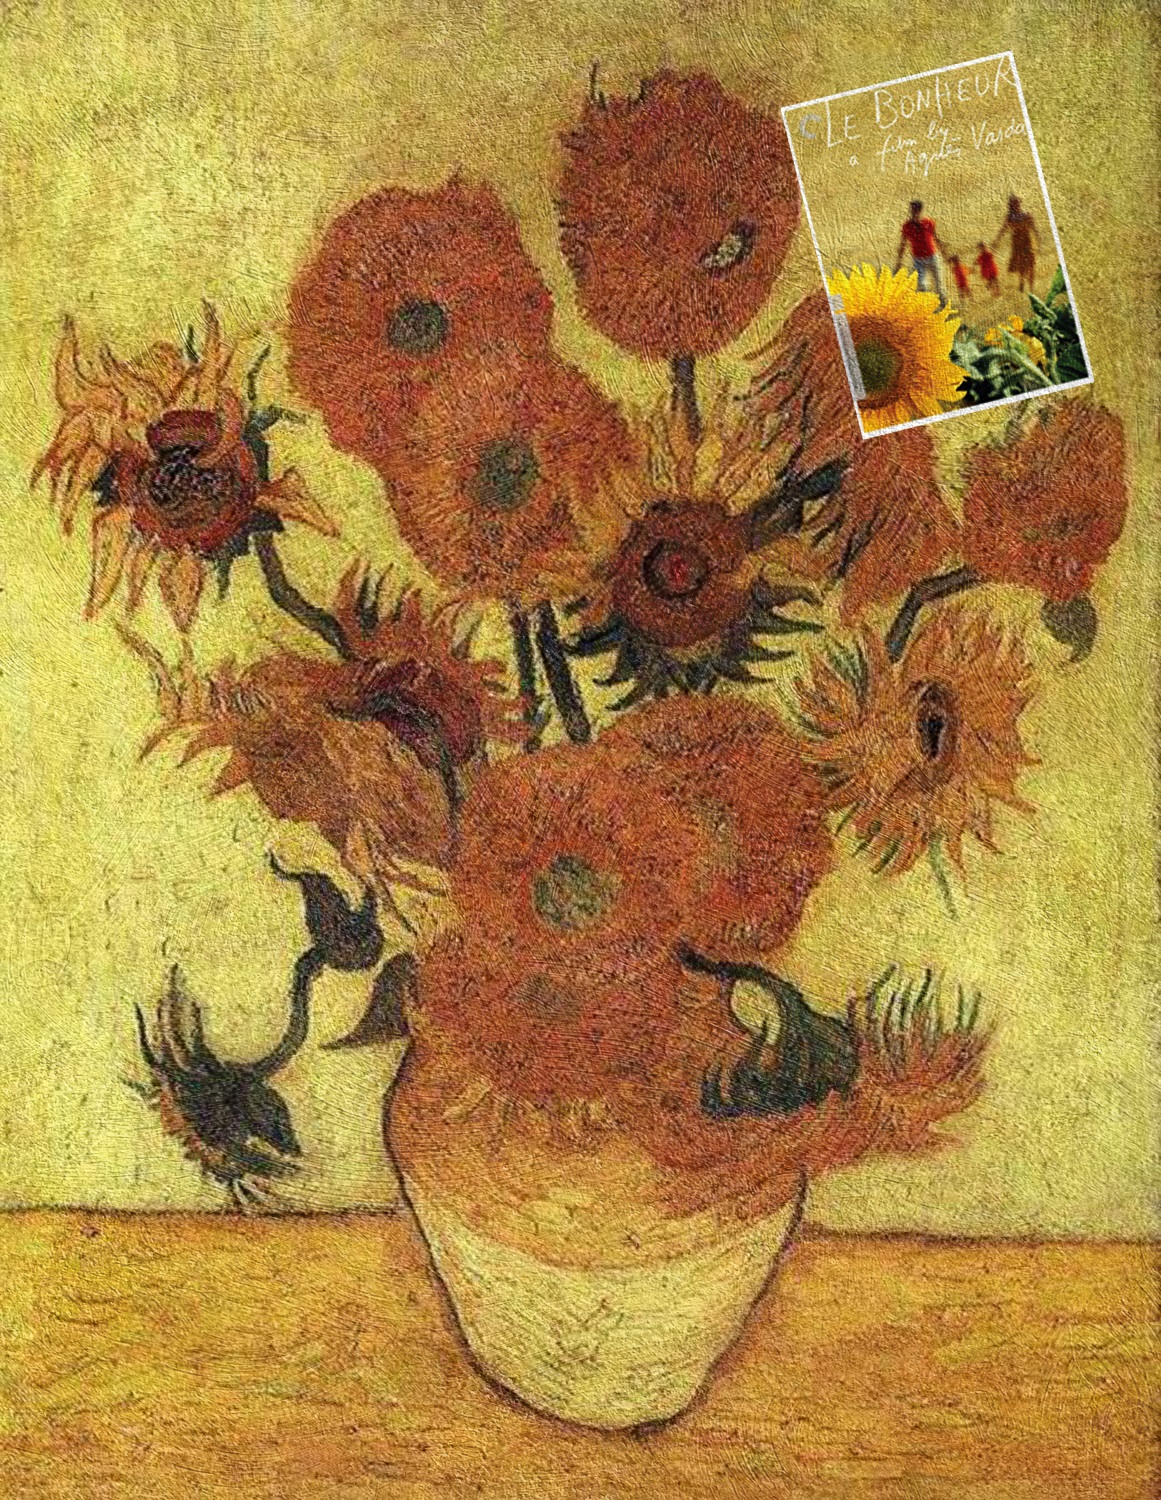 Le Bonheur by Agnes Varda + Sunflowers by Vincent van Gogh